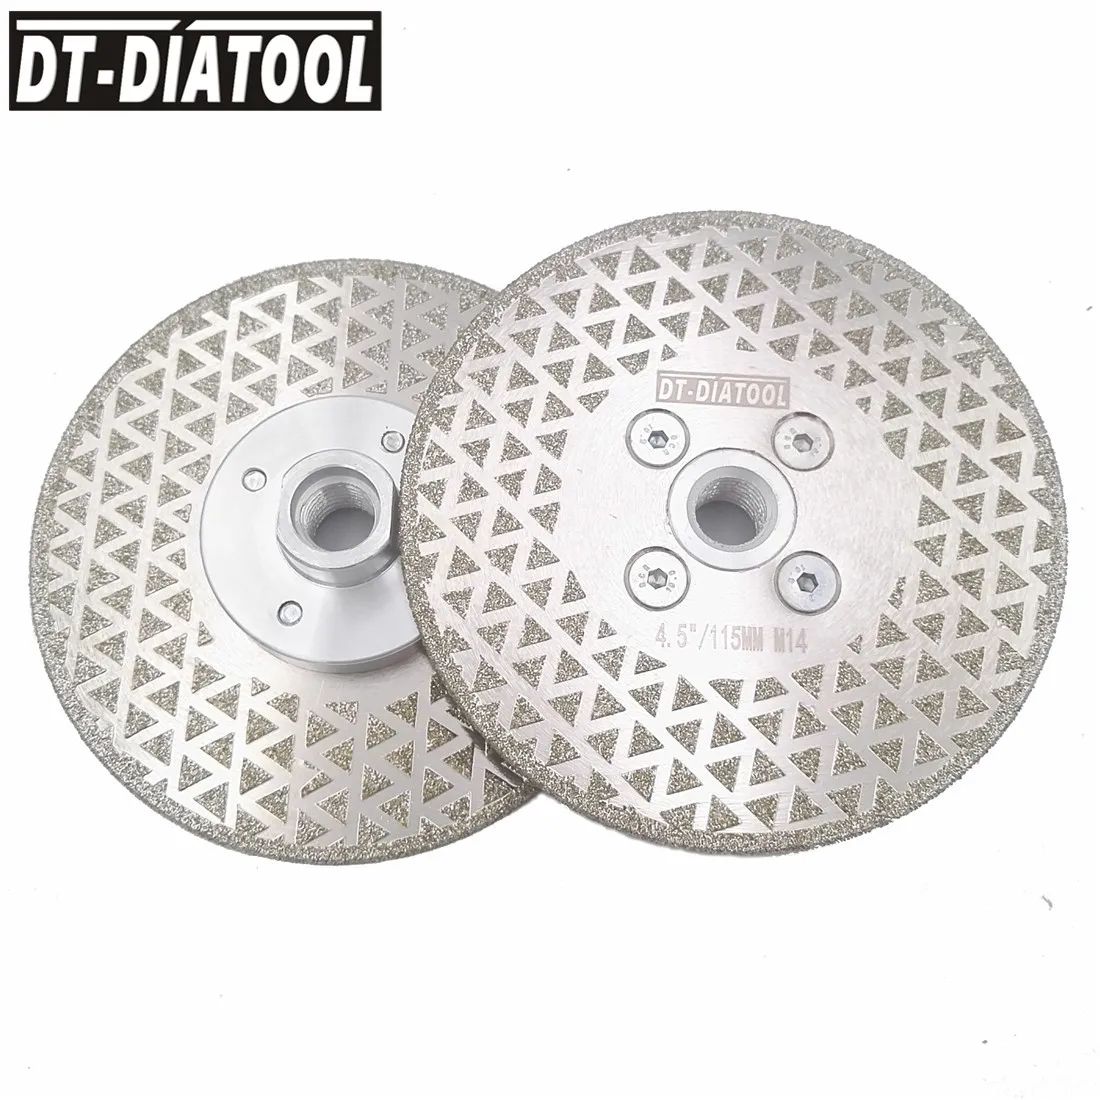 DT-DIATOOL 2 шт. M14 диаметр резьбы 115 мм/4 5 дюйма с гальваническим покрытием обе стороны